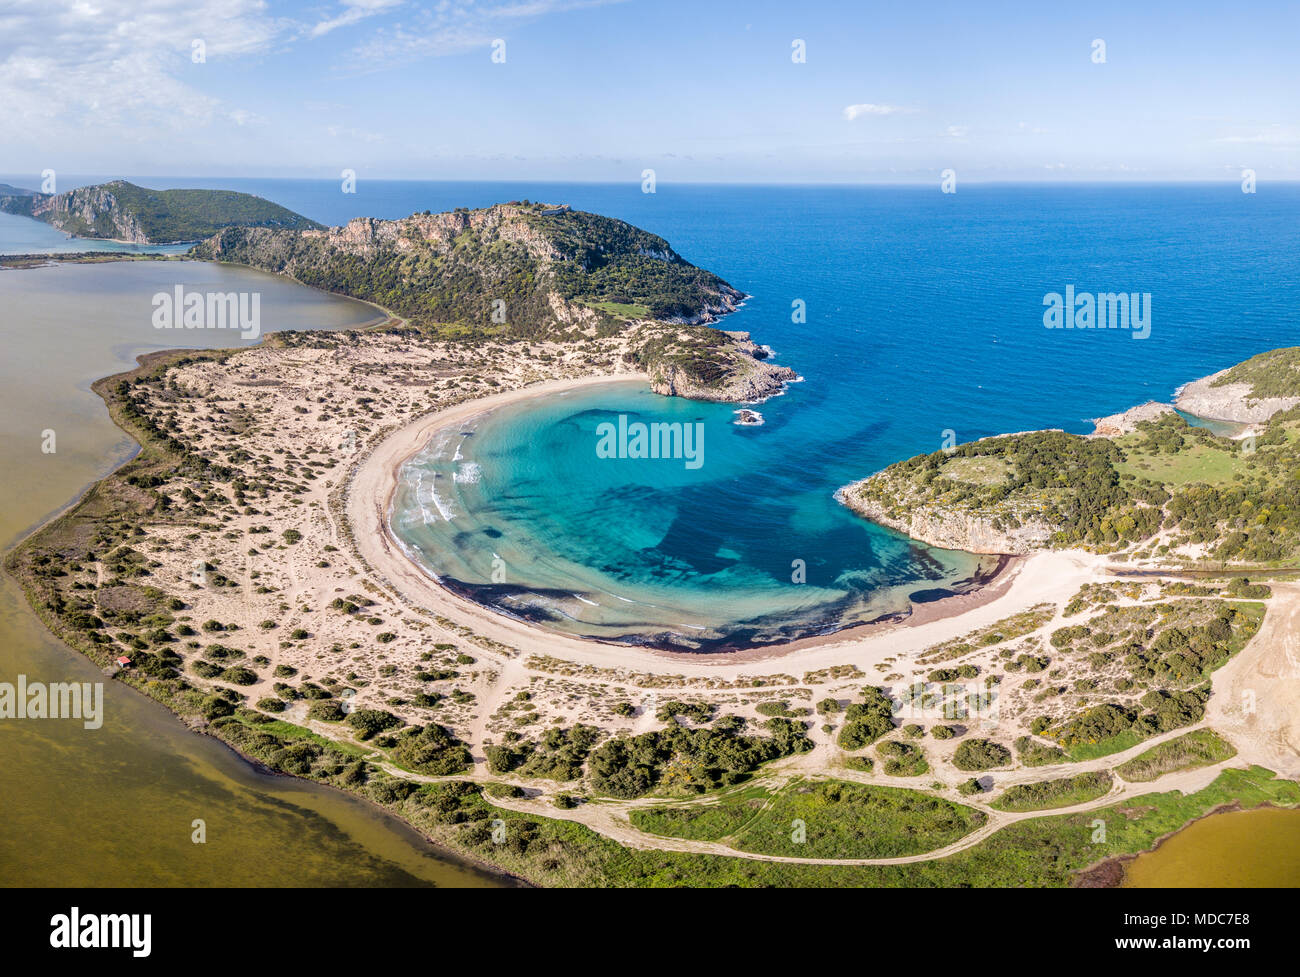 Vue aérienne de la plage de Voidokilia, une plage populaire de Messénie dans l'espace méditerranéen de la Grèce Banque D'Images